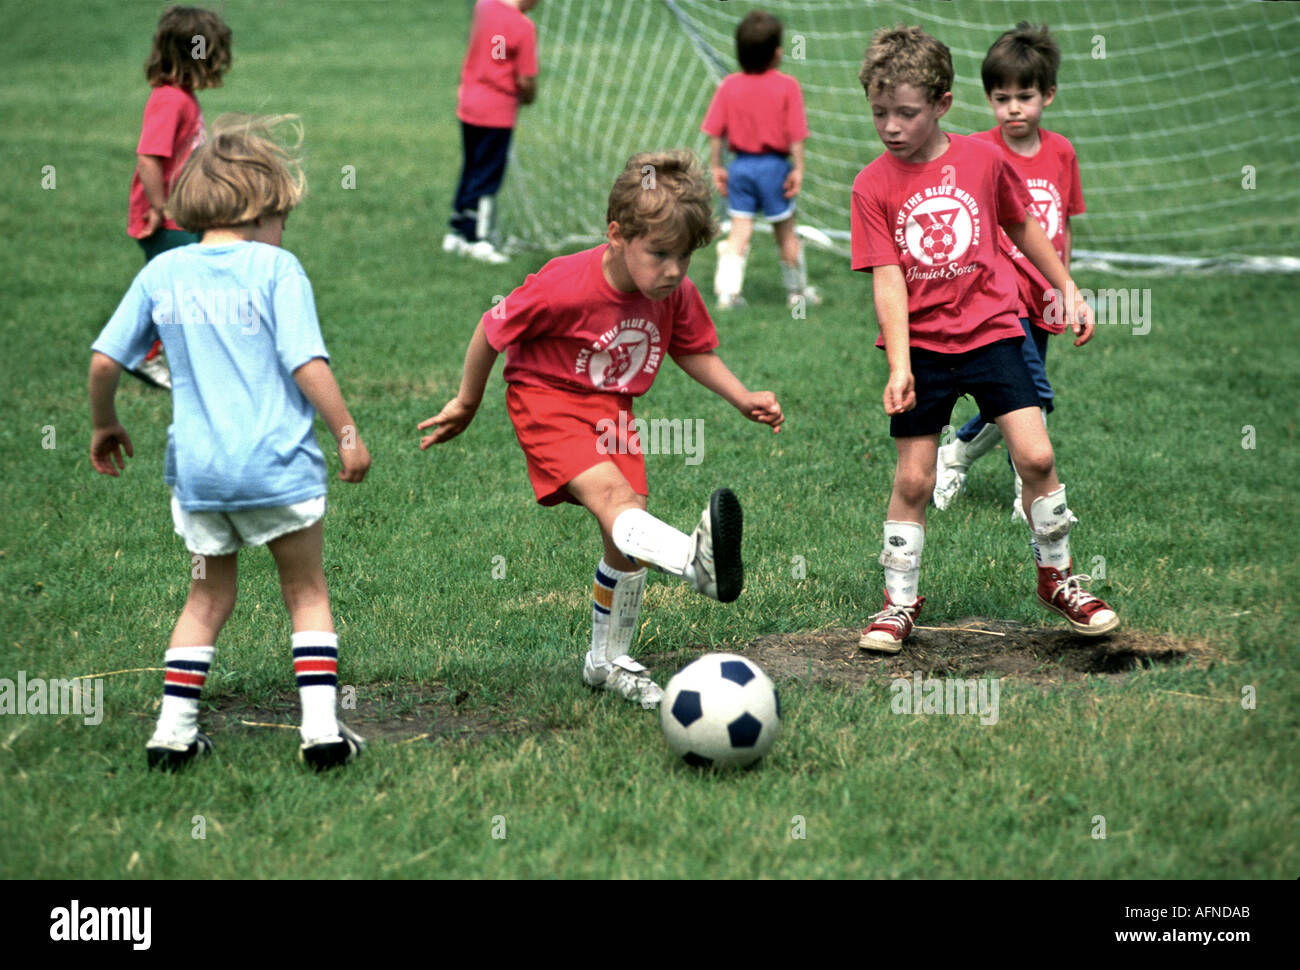 5 et 6 garçon et fille d'action soccer futbol football Port Huron au Michigan Banque D'Images